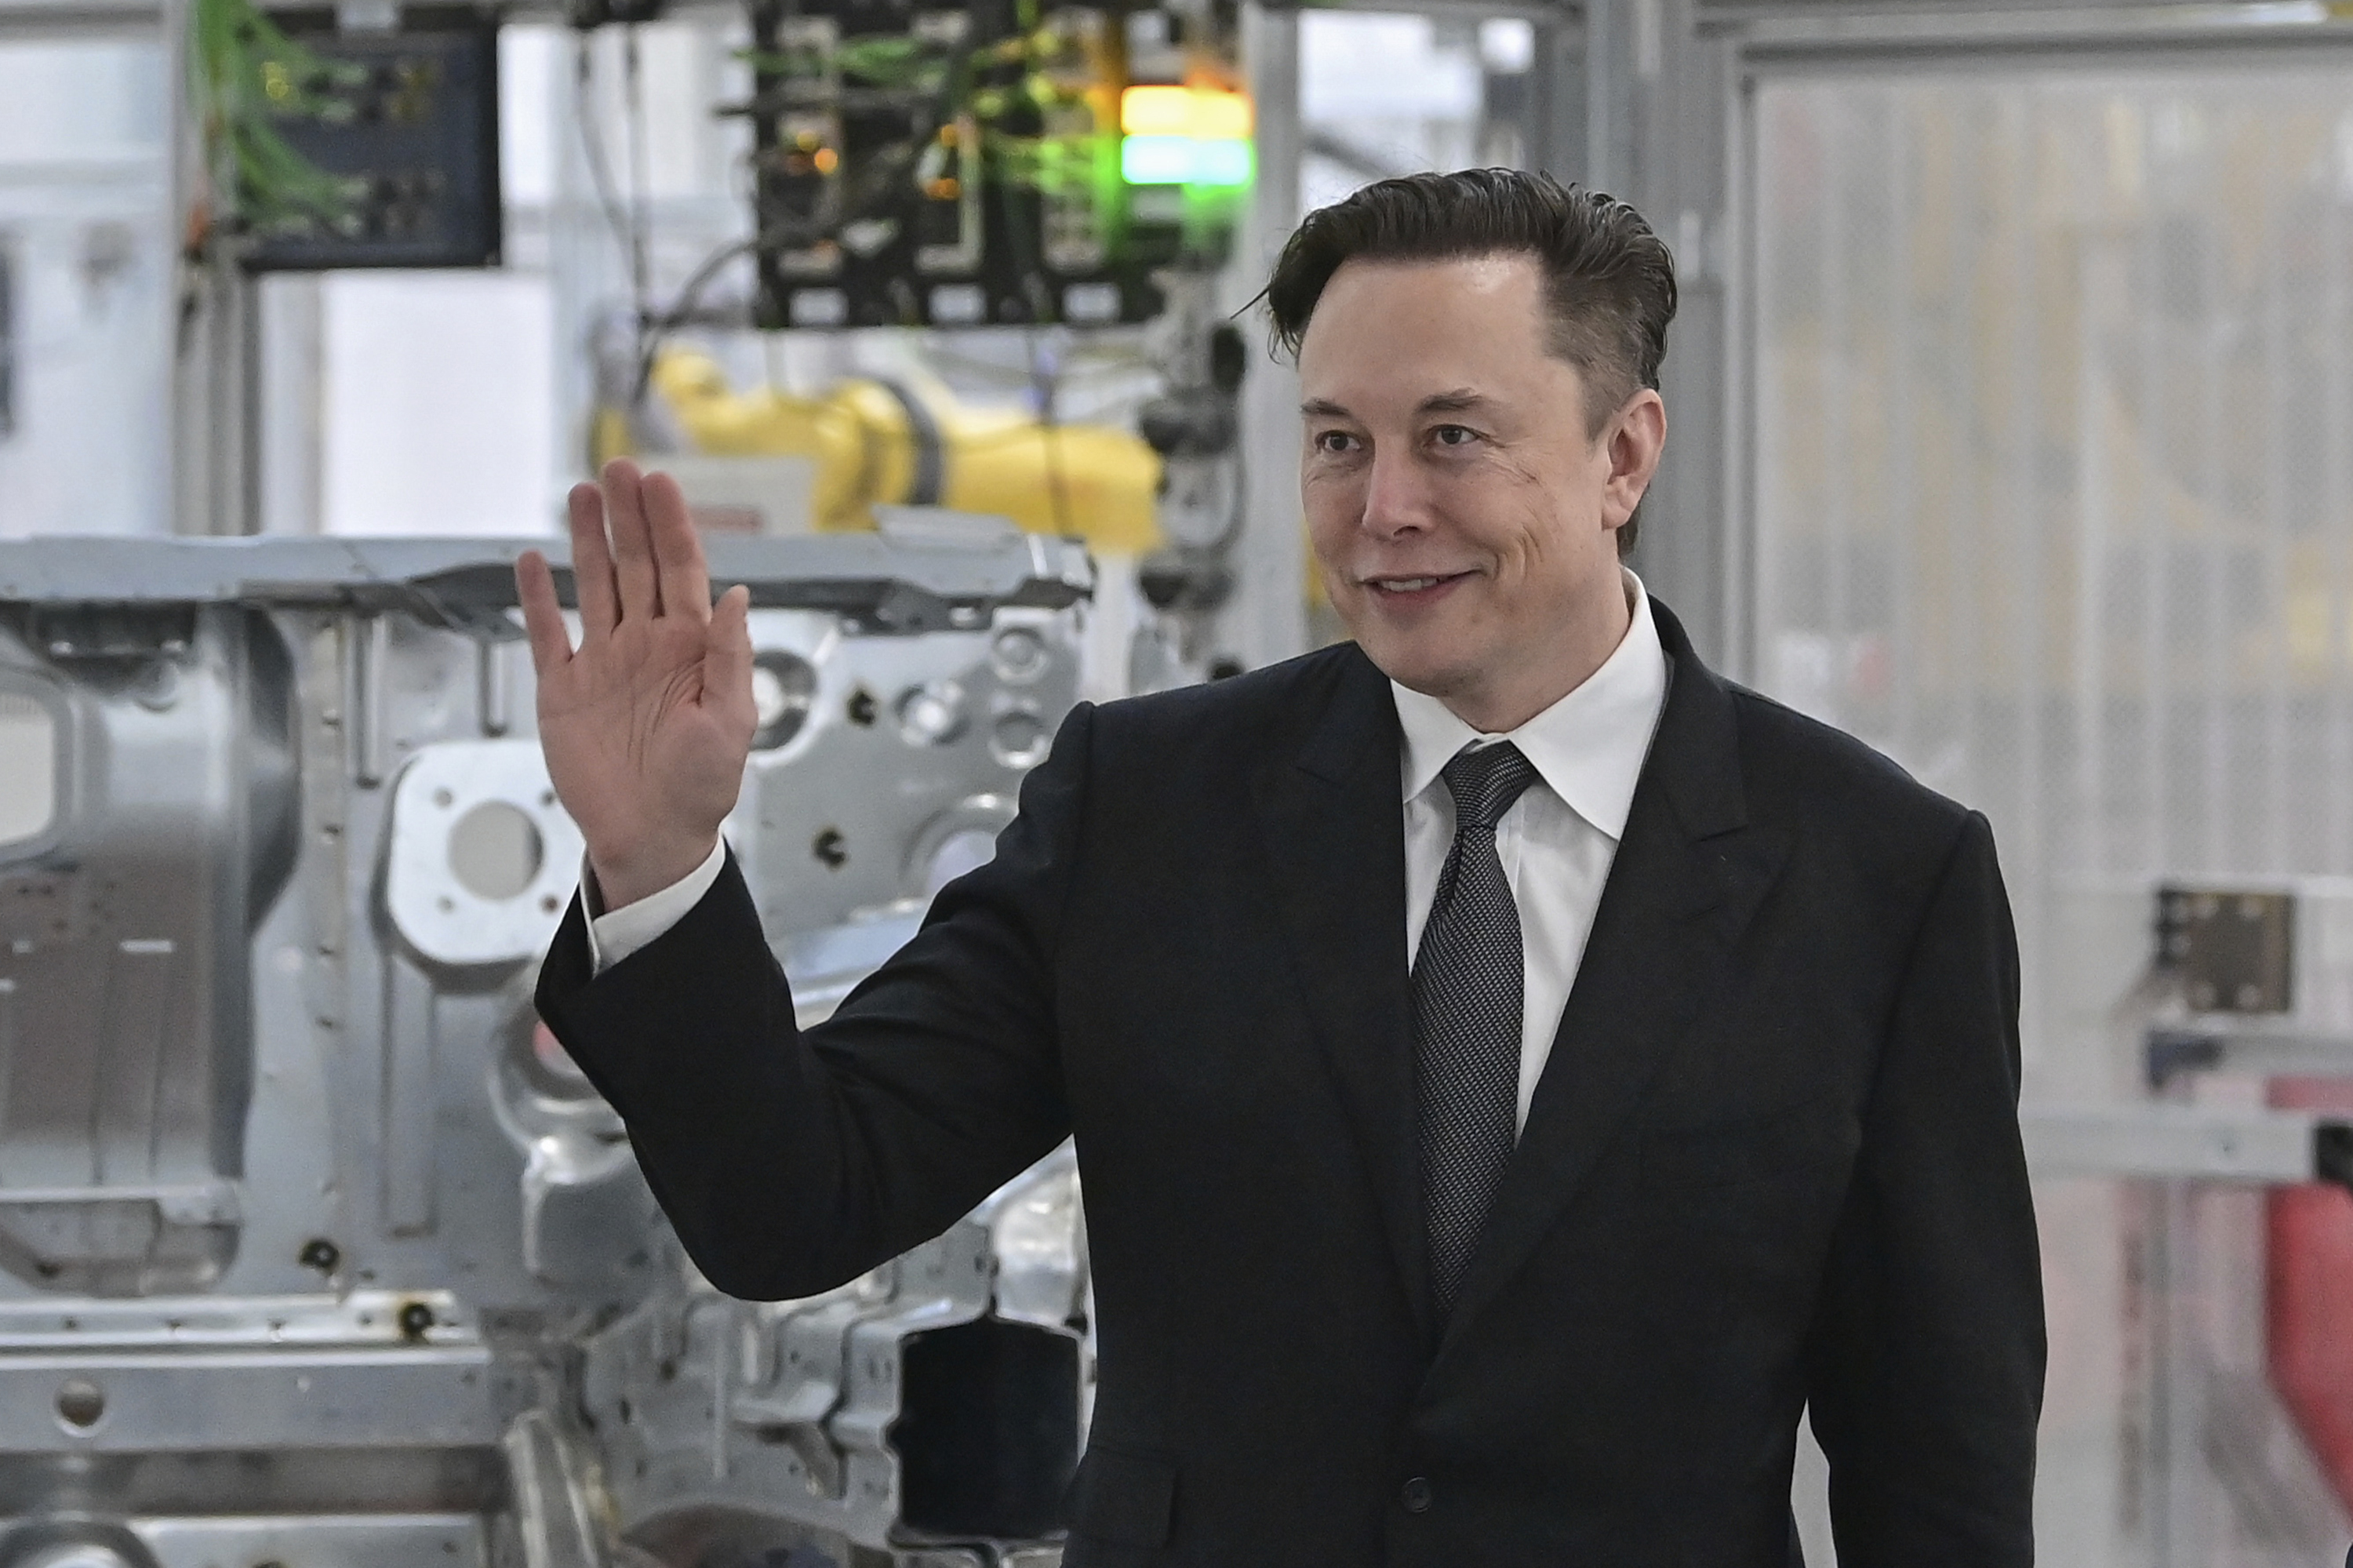 Tesla CEO Elon Musk attends the opening of a Tesla factory in Gruenheide, Germany on March 22, 2022. (Patrick Pleul/AP)